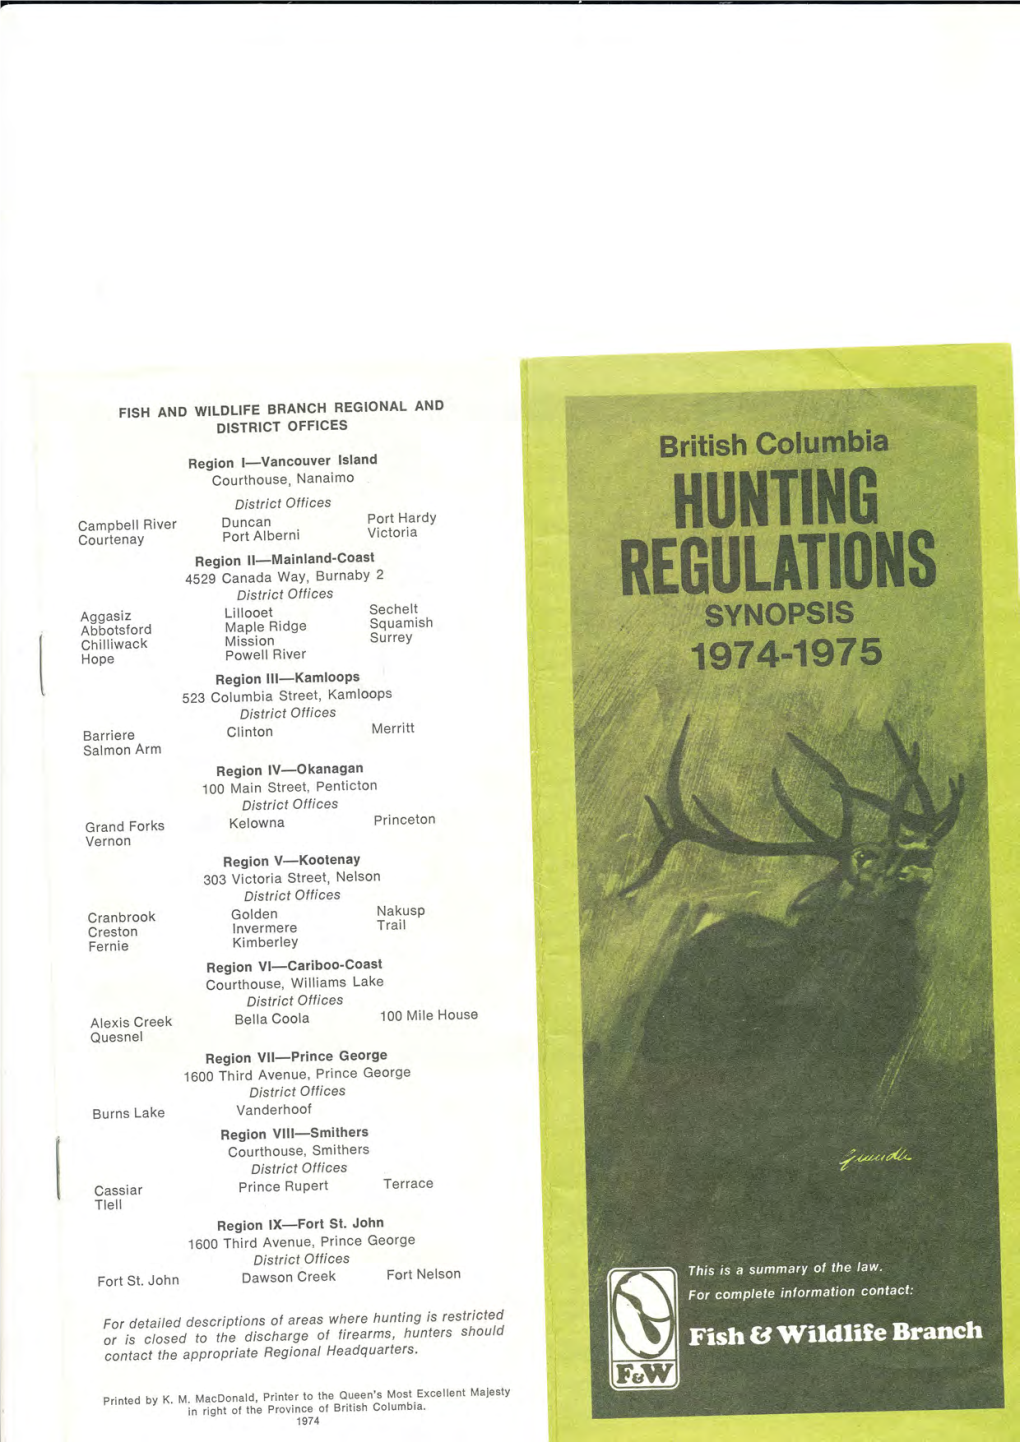 BC Hunting Regulations Synopsis 1974-75